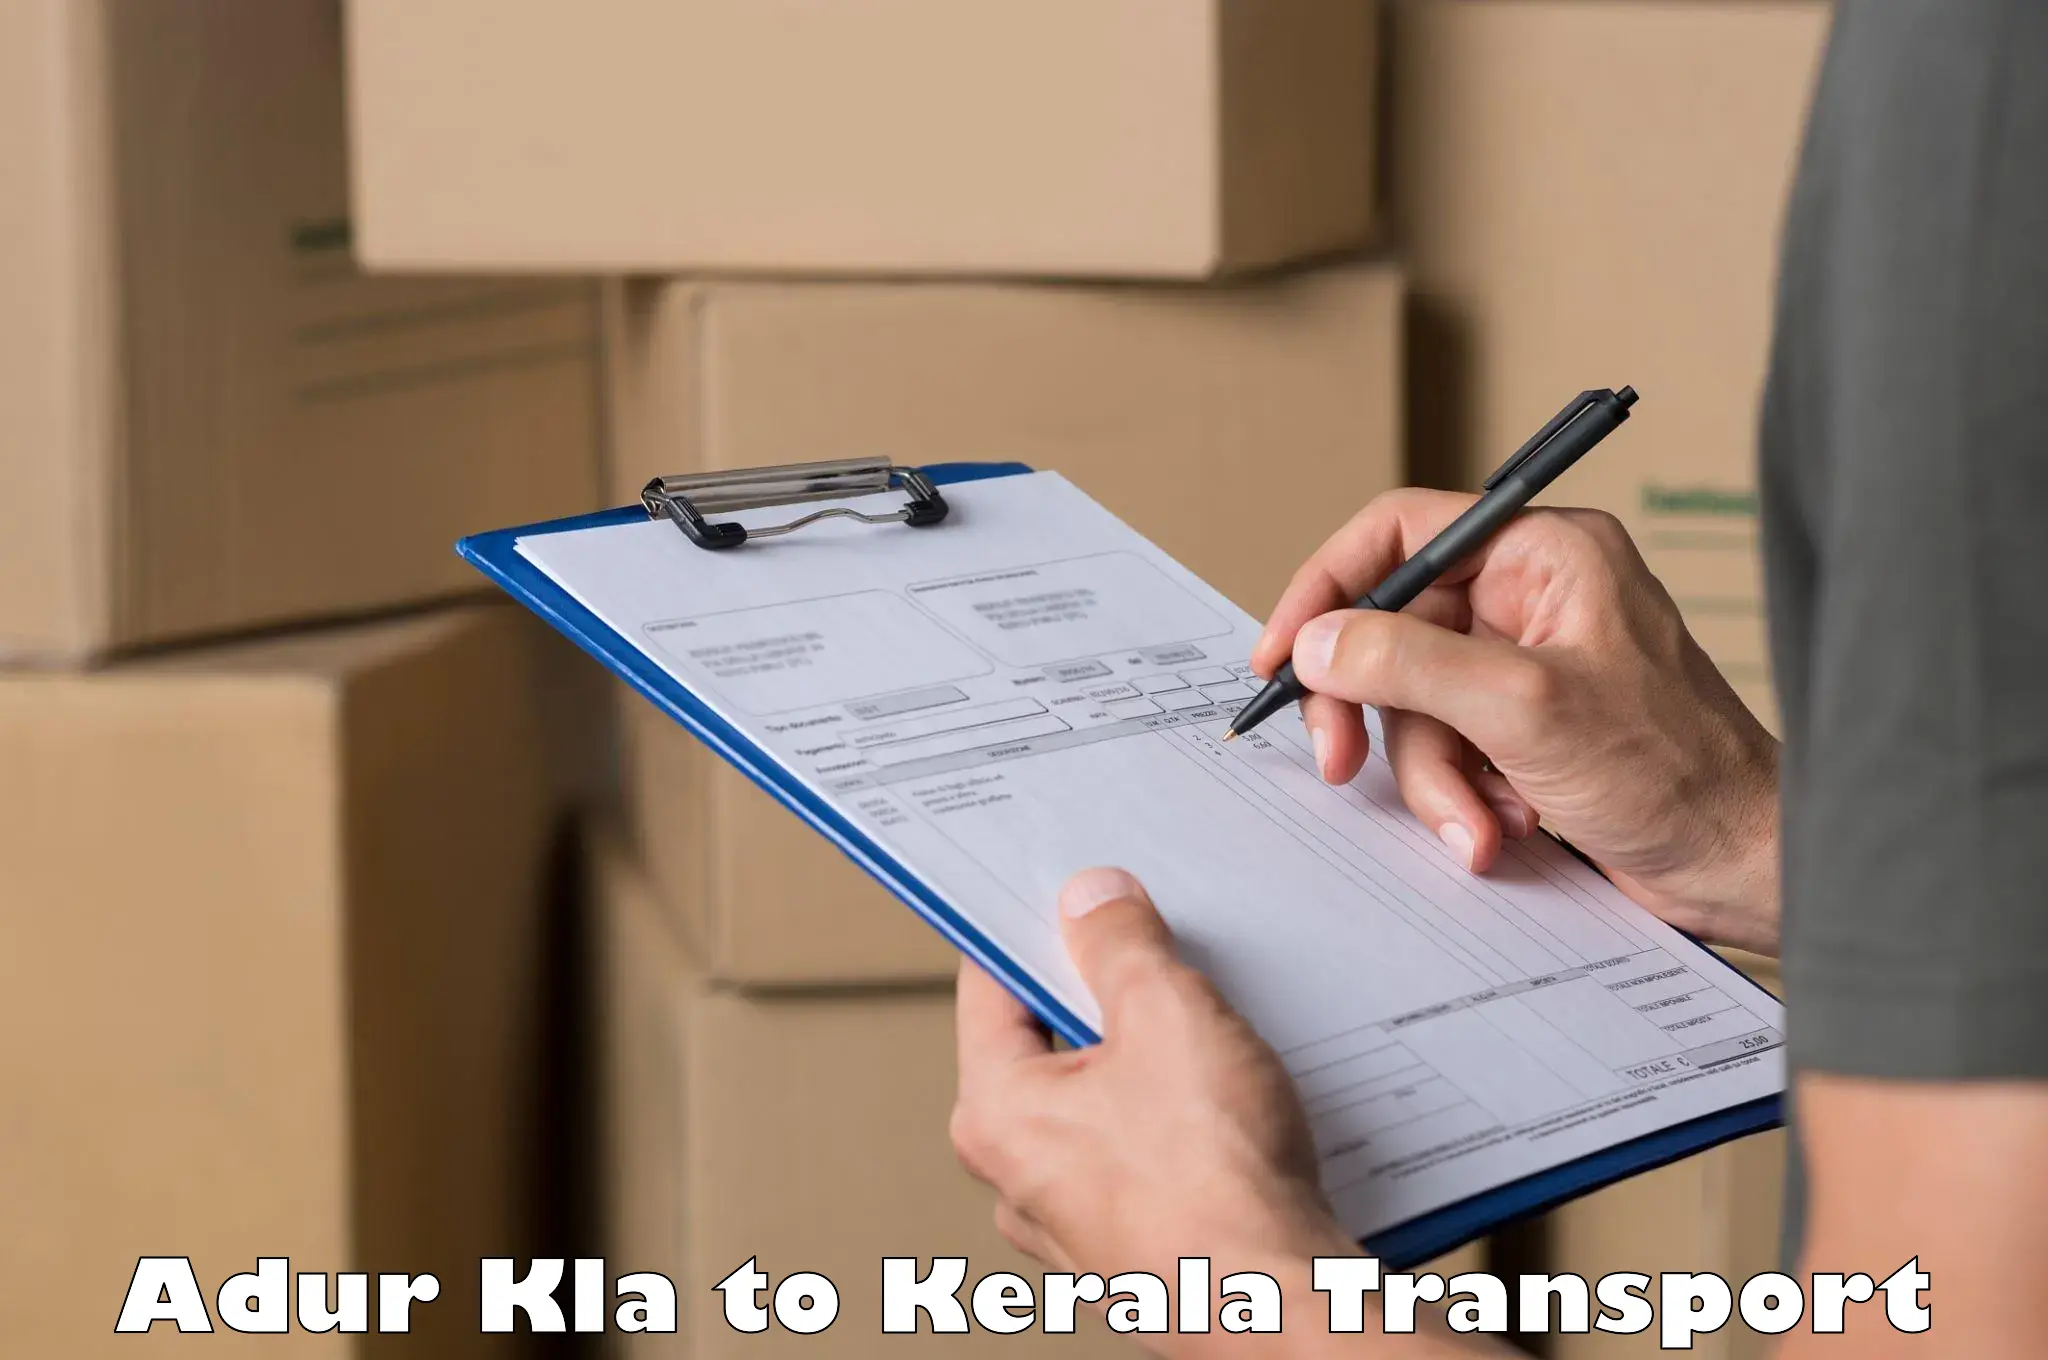 Commercial transport service Adur Kla to Kiliyanthara